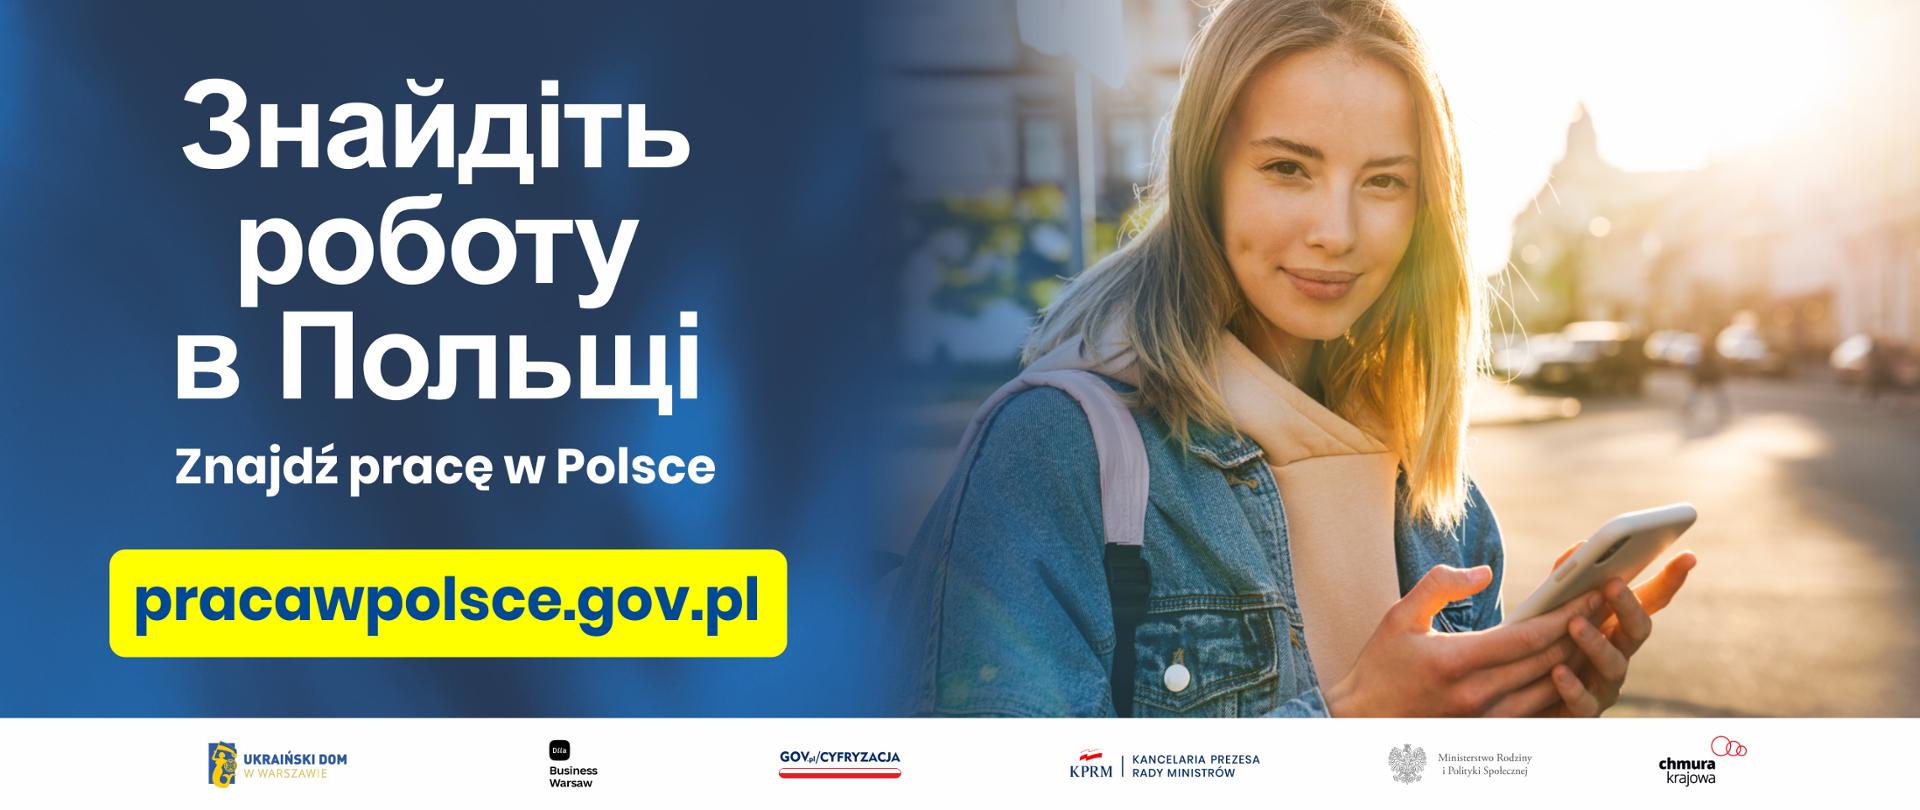 Pracawpolsce - portal z ofertami pracy skierowany do obywateli Ukrainy - przebywających w Polsce